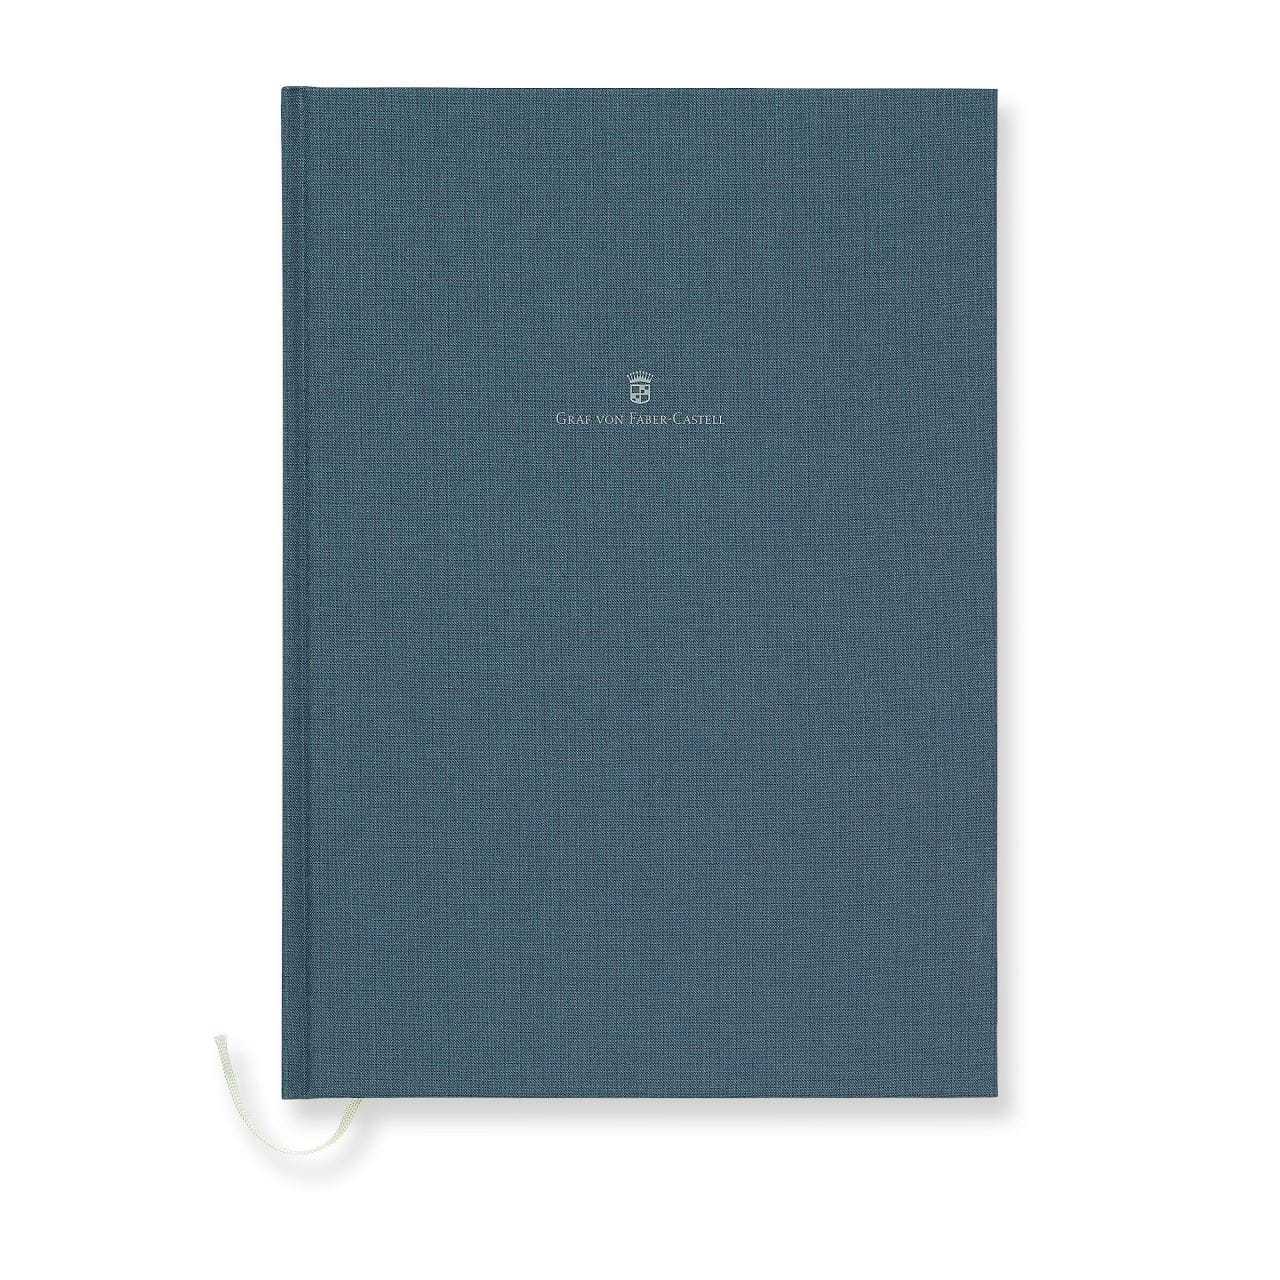 Graf-von-Faber-Castell - Book con copertina in lino formato A4, blu